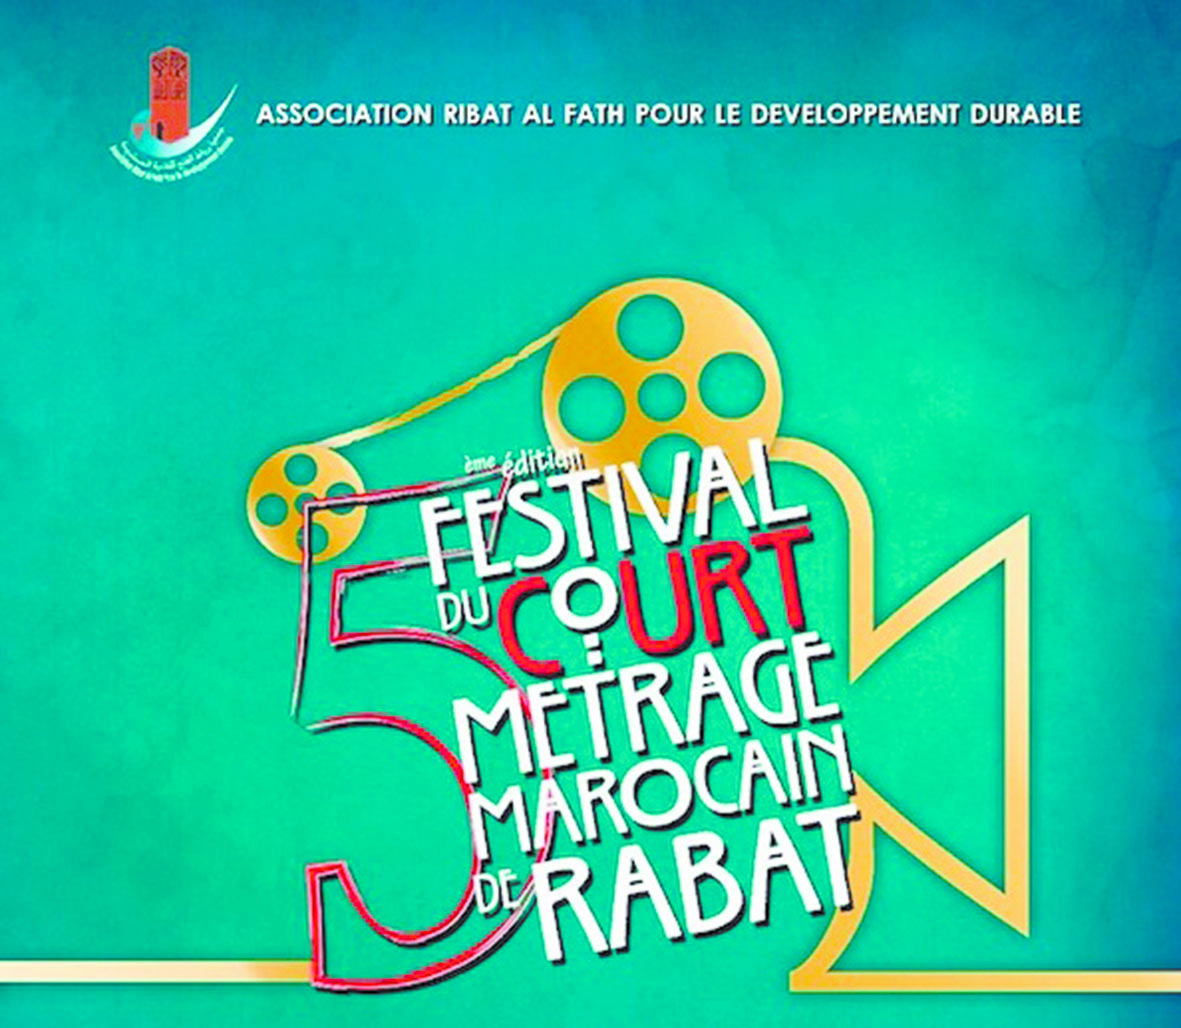 Faute de financement, le Festival du court-métrage de Rabat n’aura pas lieu